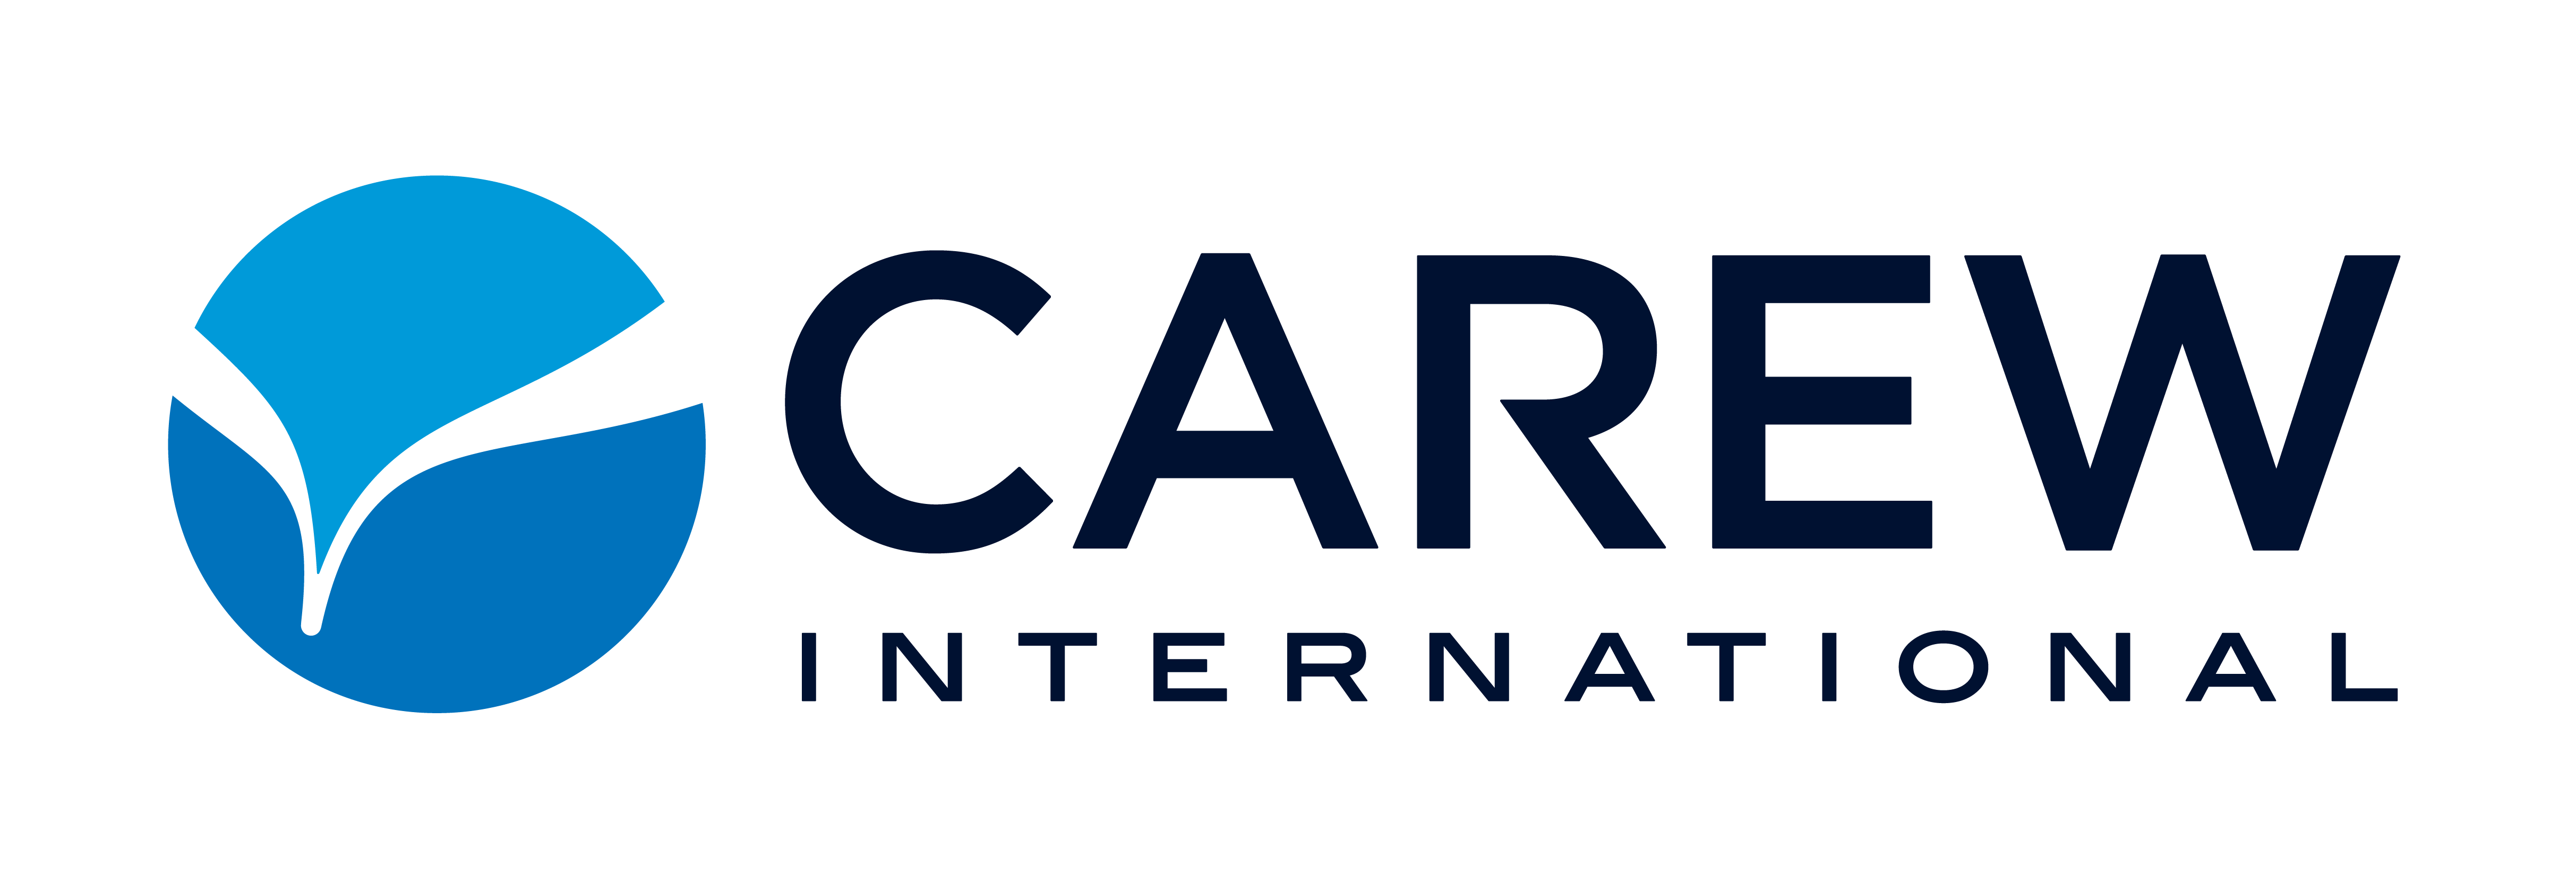 Carew Logo (horizontal)